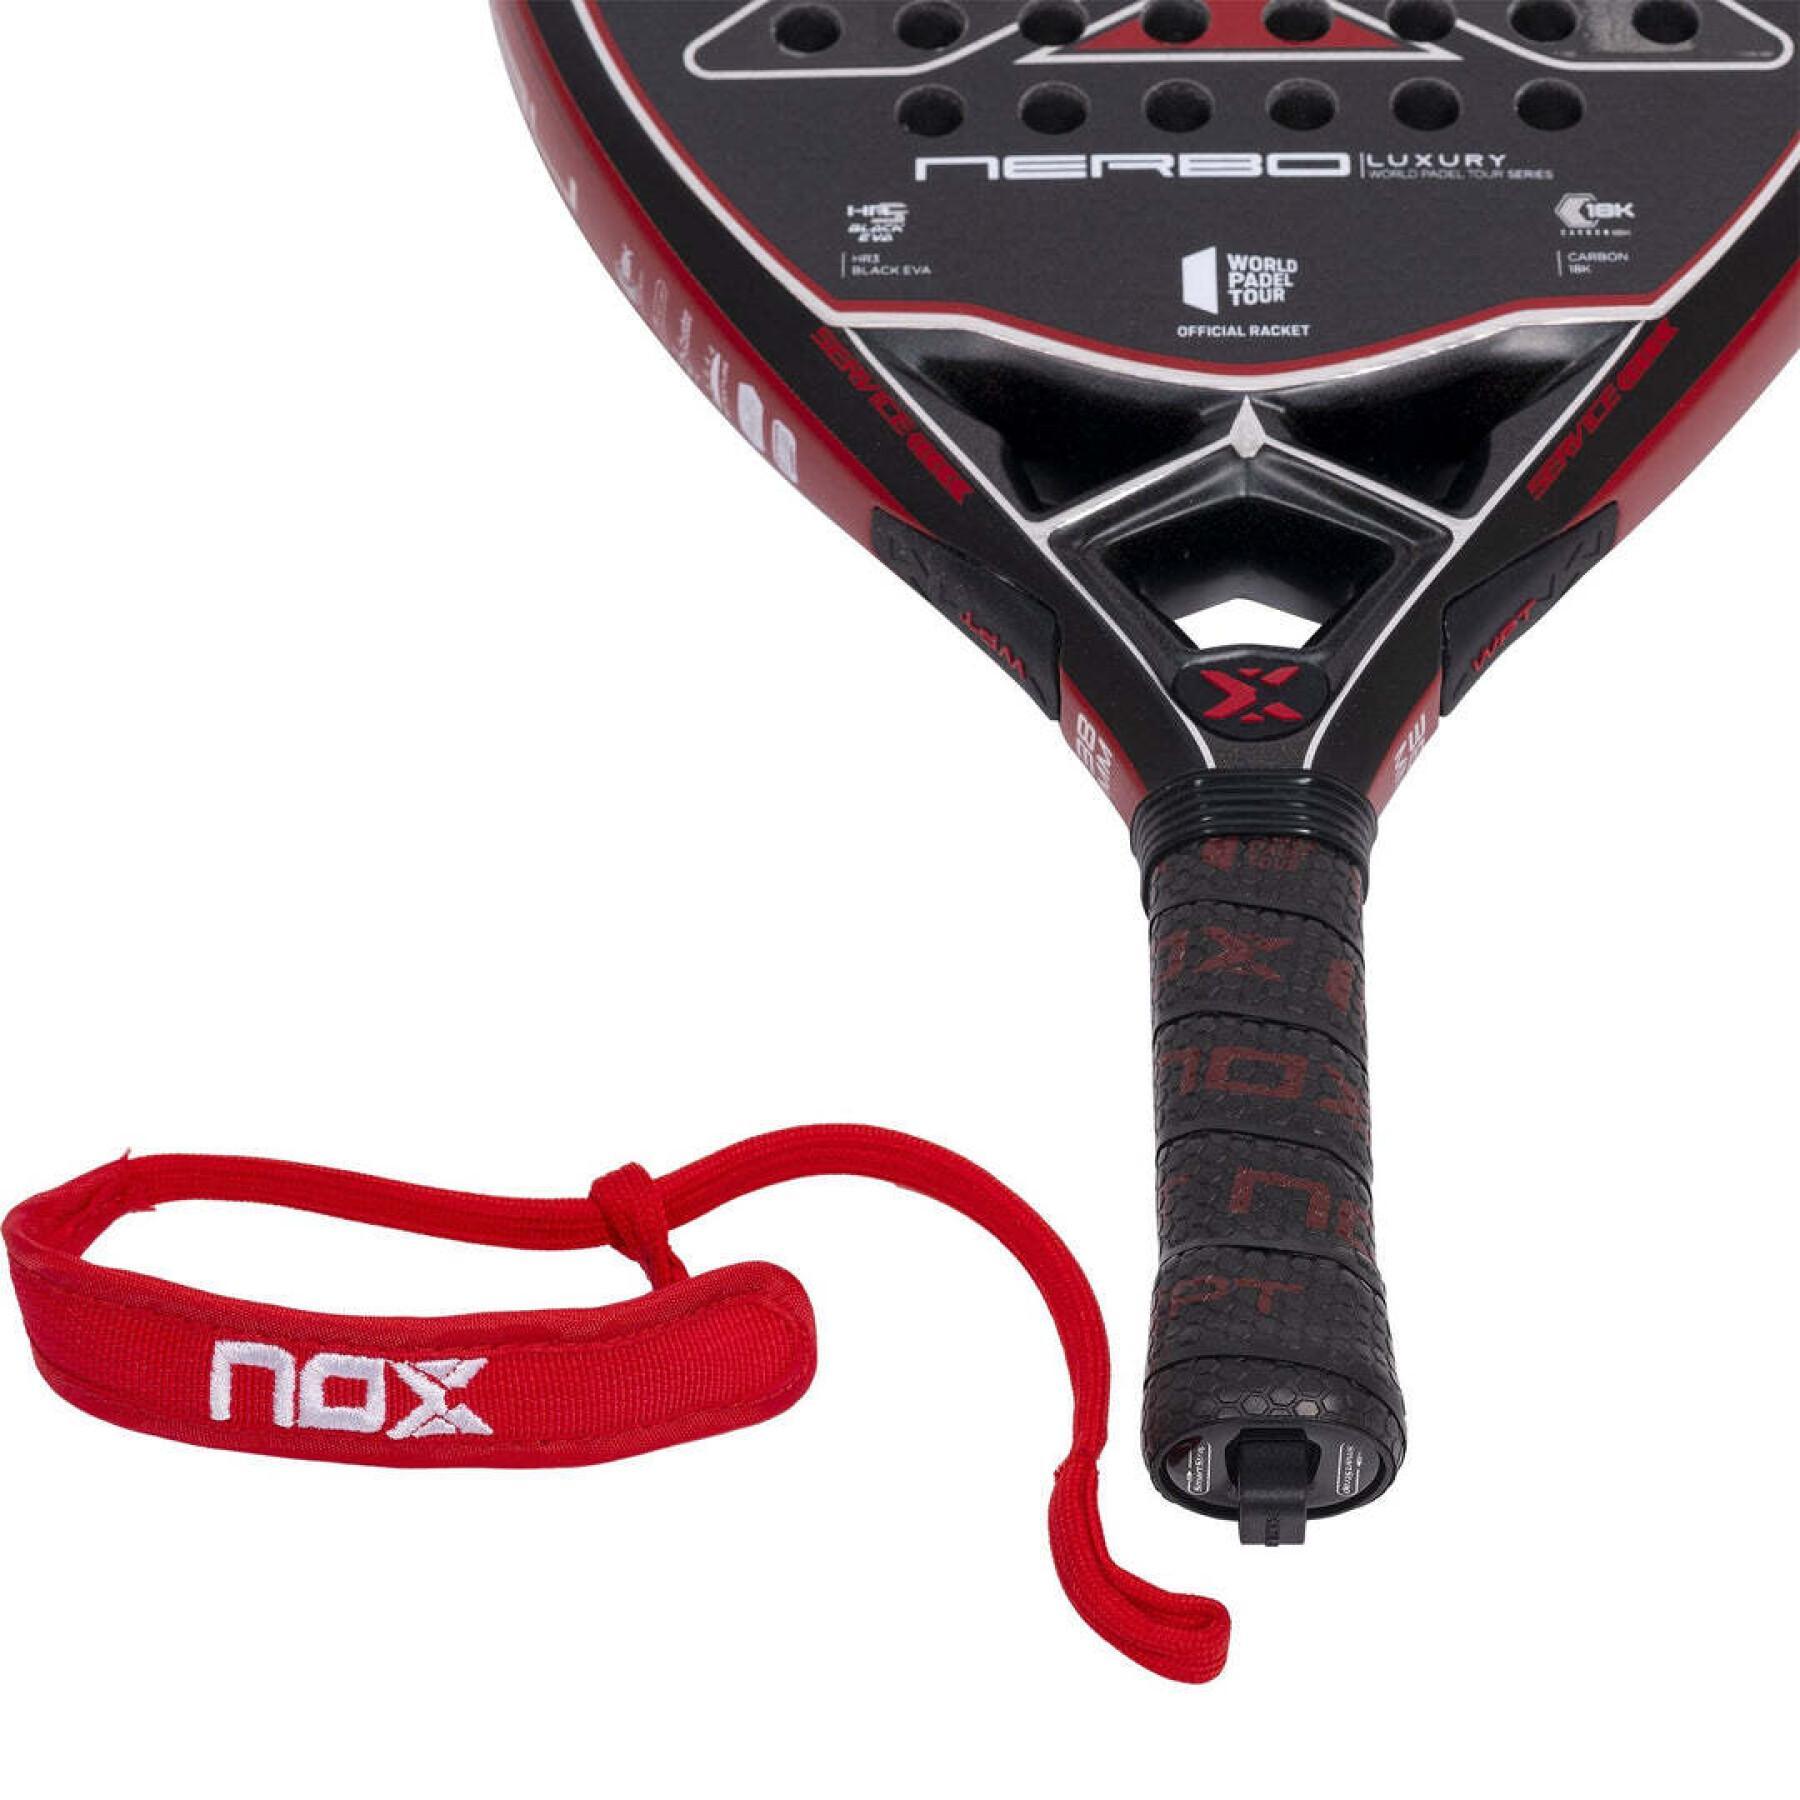 Racket z padel Nox Nerbo WPT Luxury Series